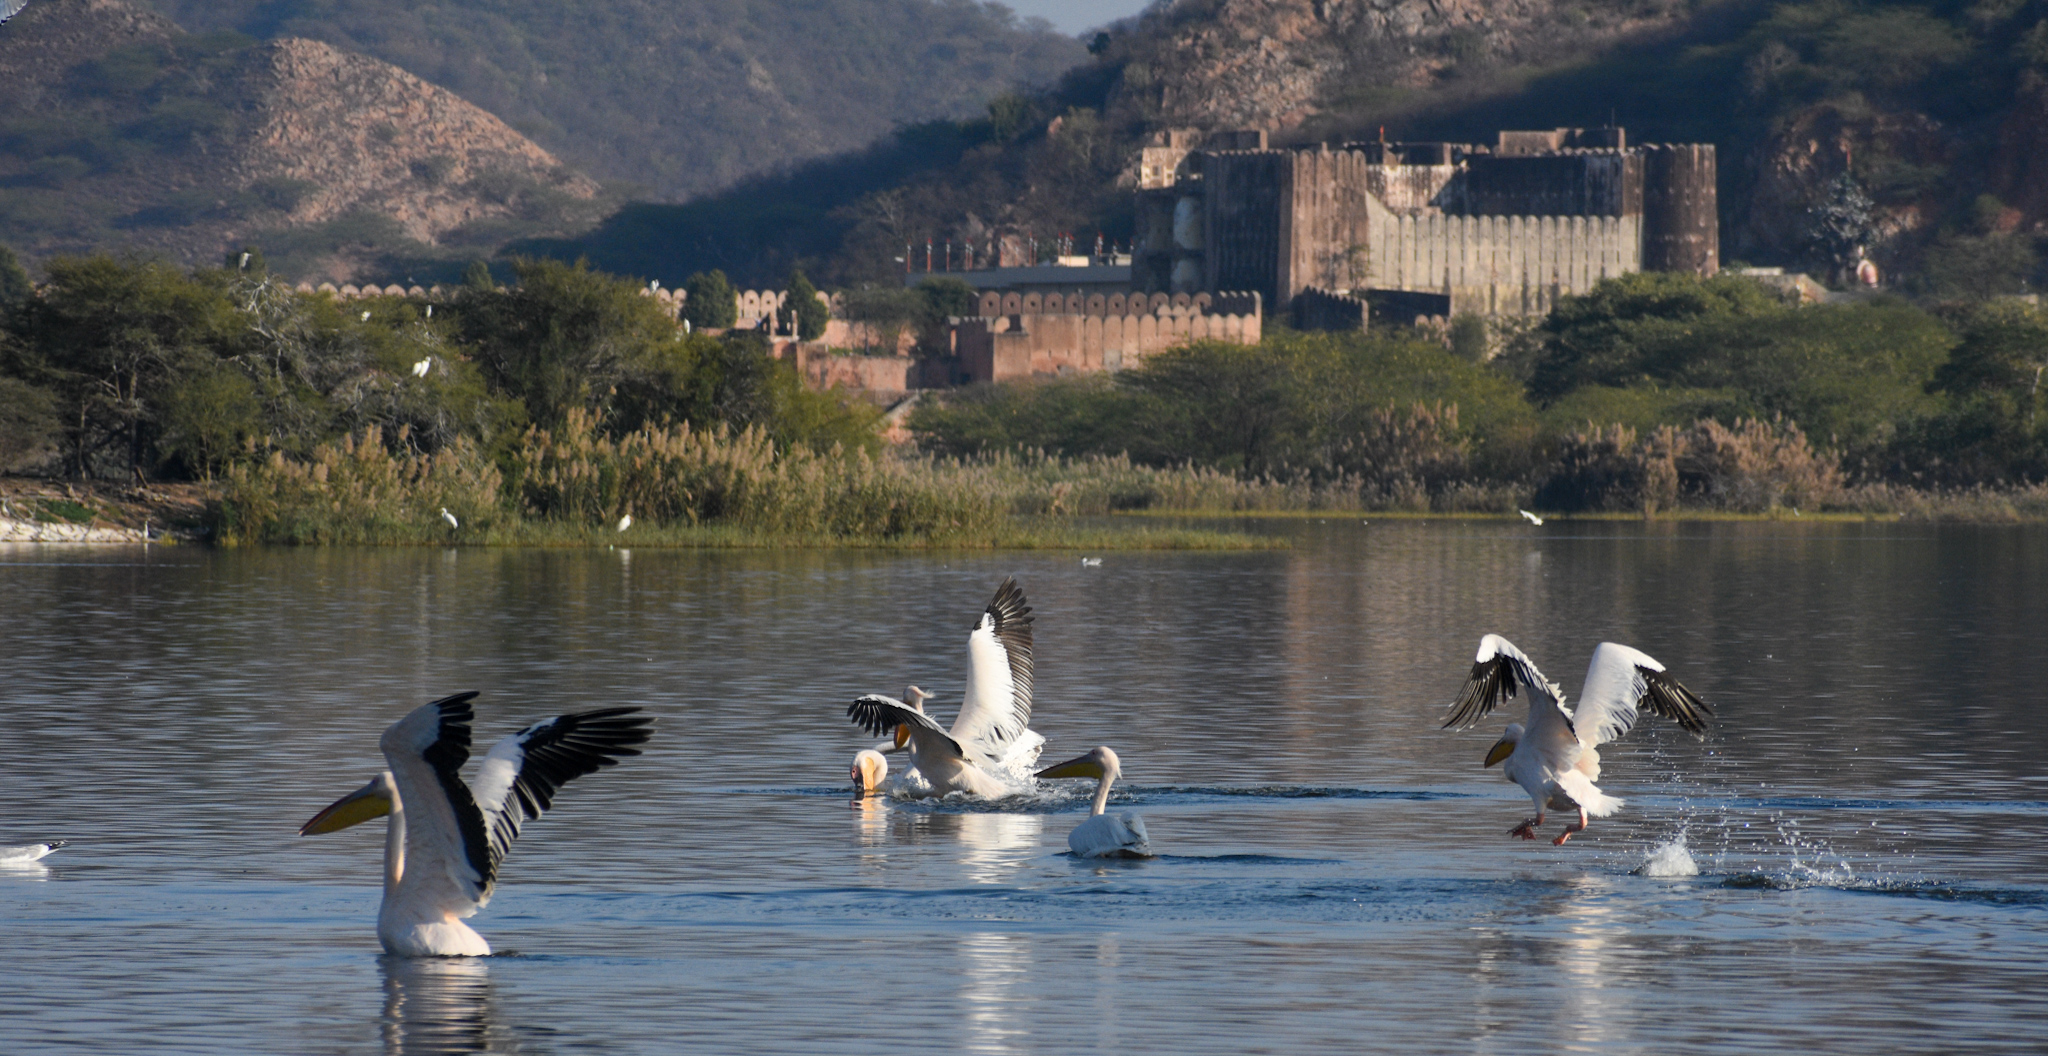 जल महल झील में इन दिनों प्रवासी पक्षियों का लगा हुआ है डेरा कई प्रजाति के पक्षी कर रहे हैं विचरण दिन भर पक्षियों की अठखेलियां और शिकार का आनंद ले रहे हैं पर्यटक